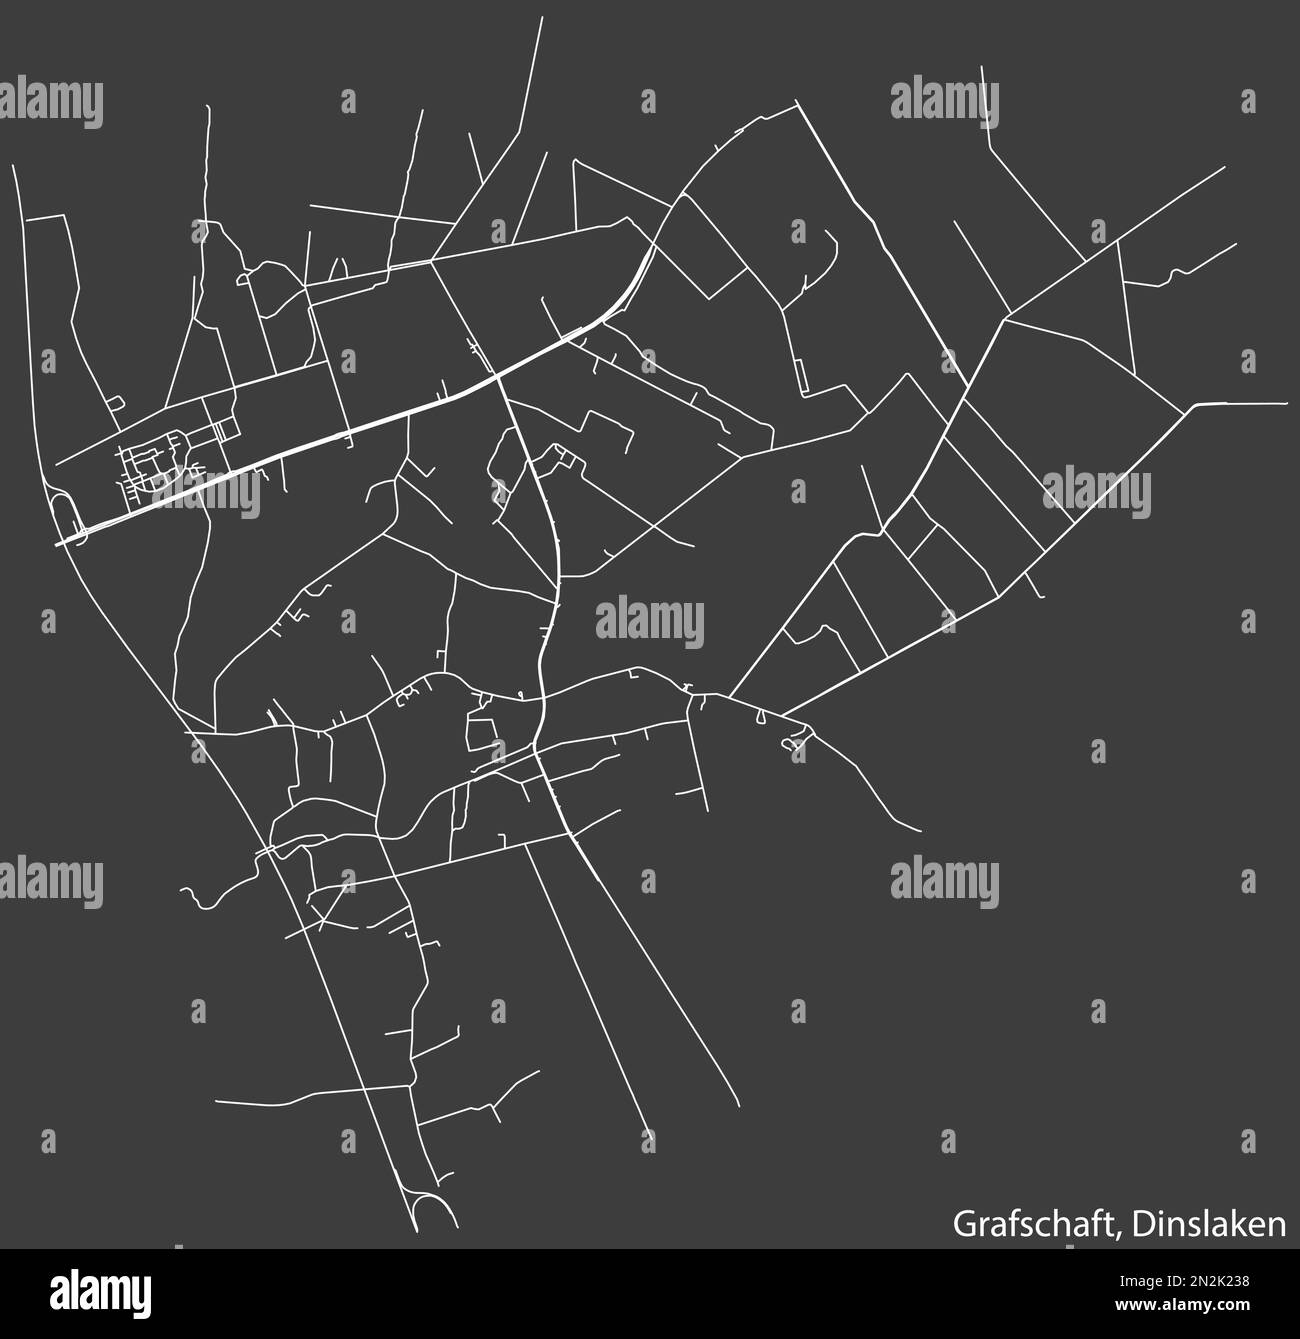 Mappa stradale del BOROUGH DI GRAFSCHAFT, DINSLAKEN Illustrazione Vettoriale